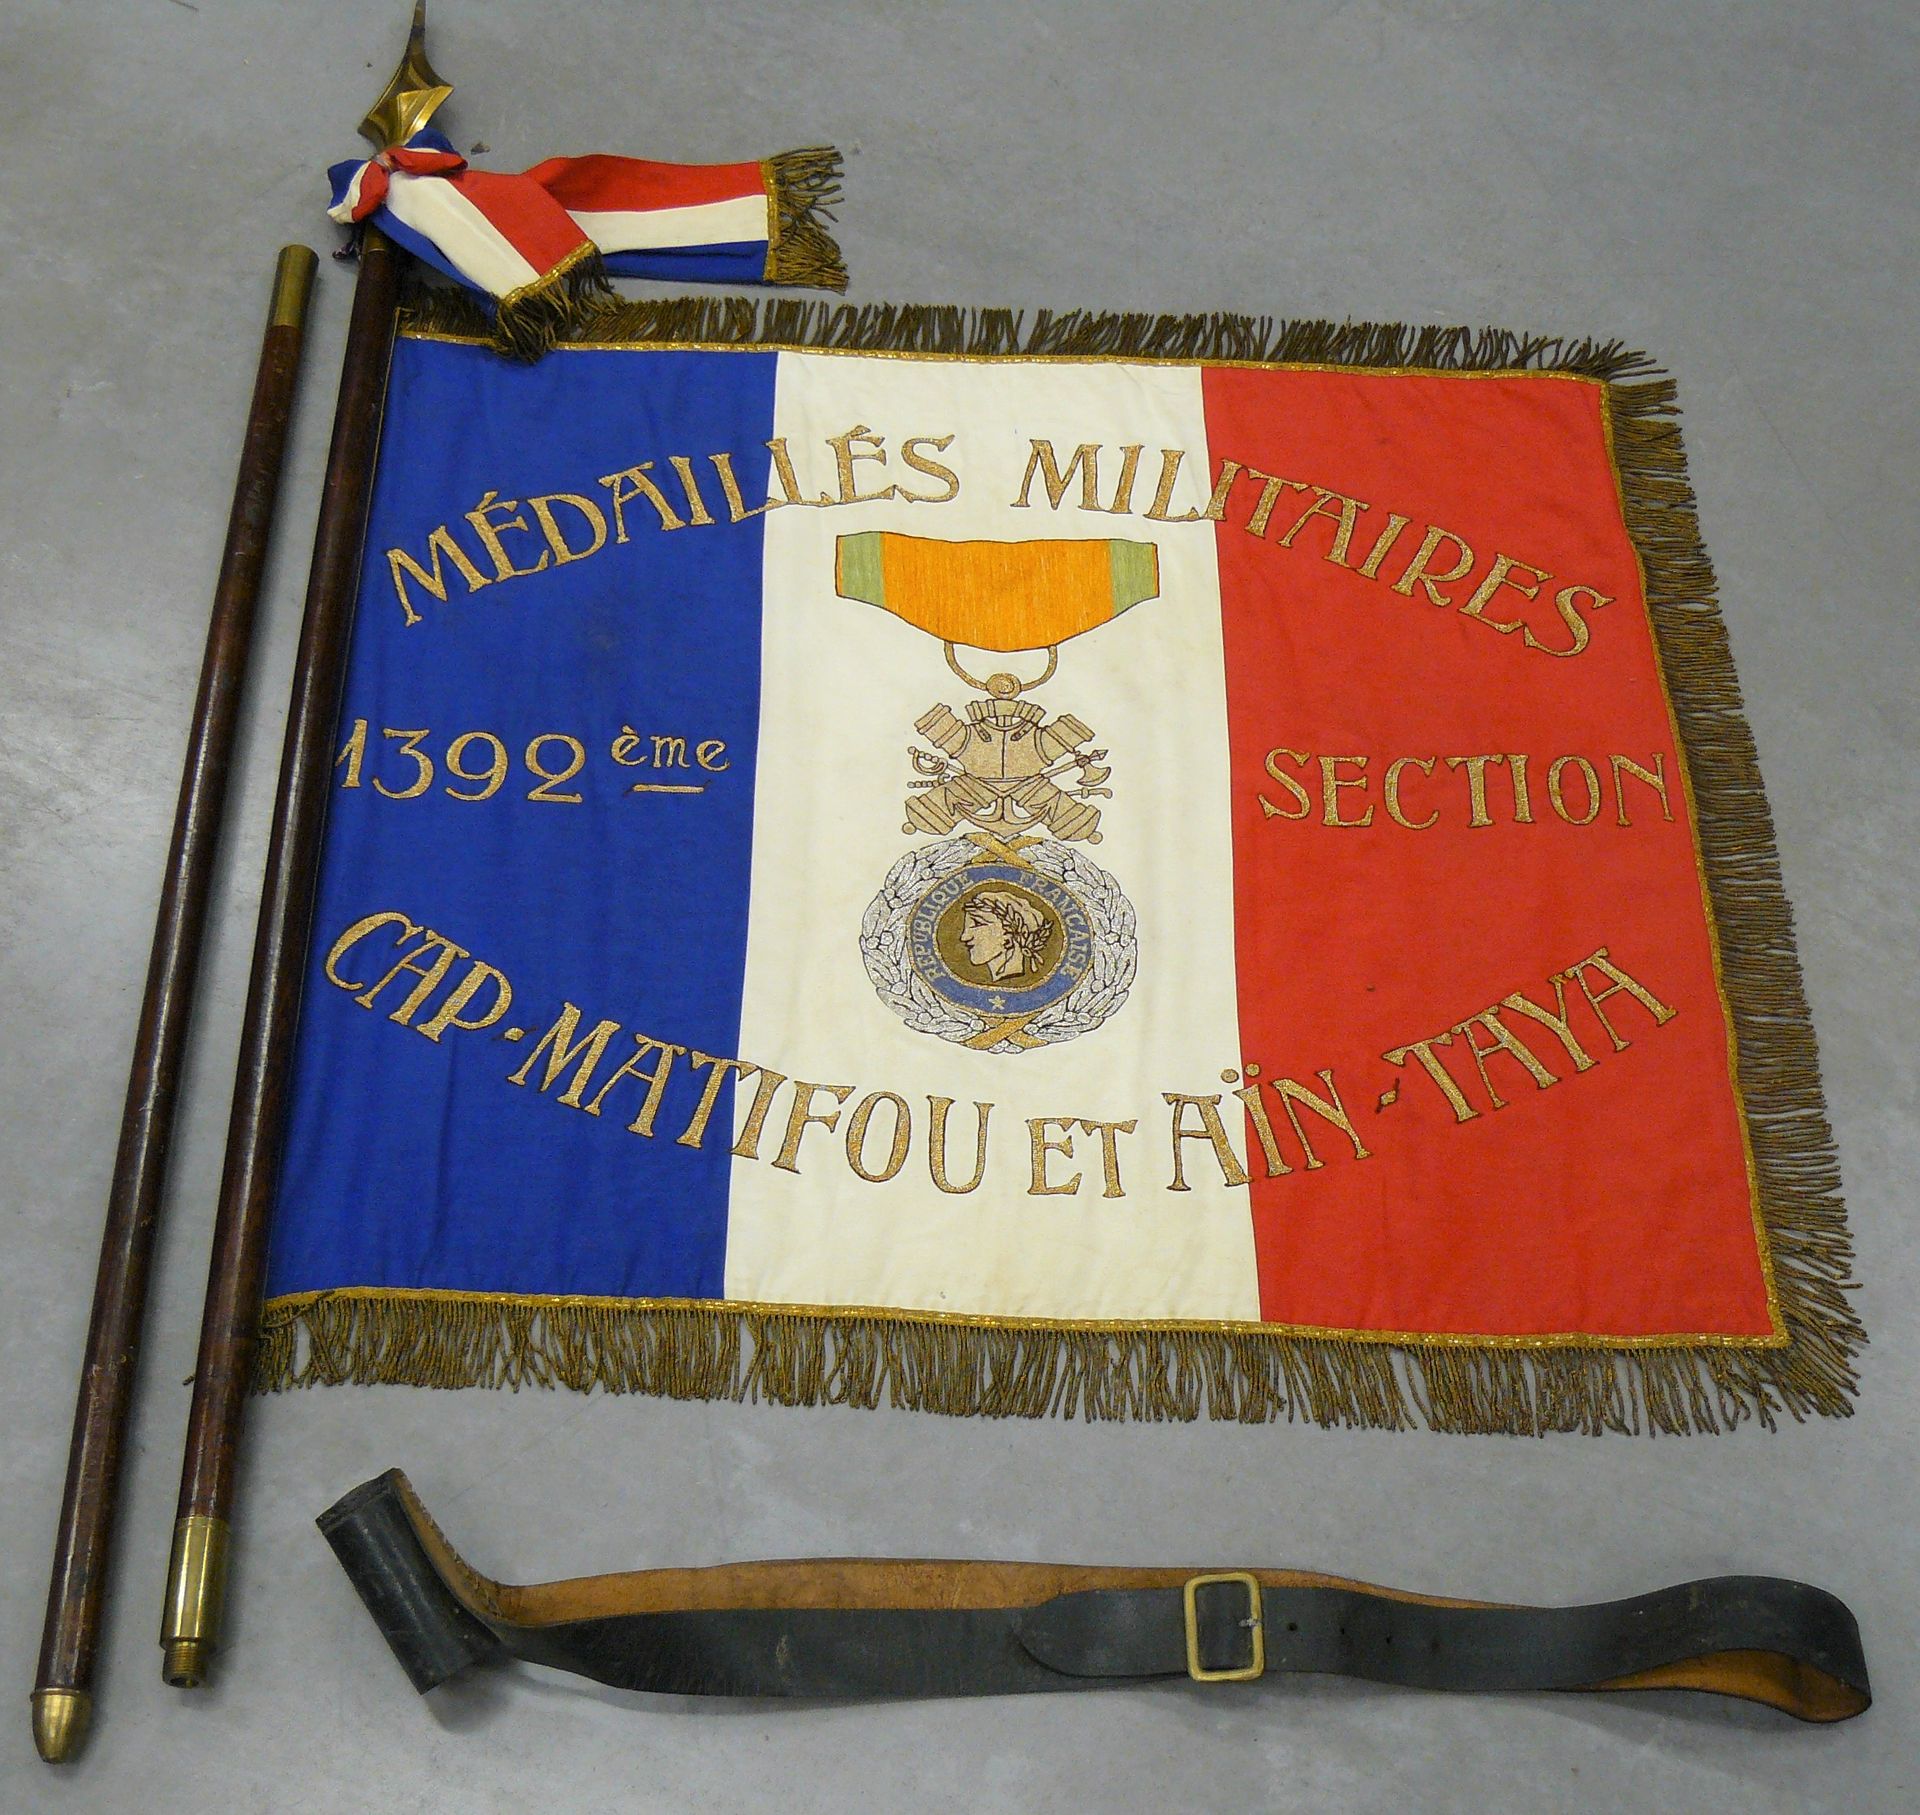 Null eine dreifarbige Fahne mit der Bezeichnung: médaillés militaires 1392 ème s&hellip;